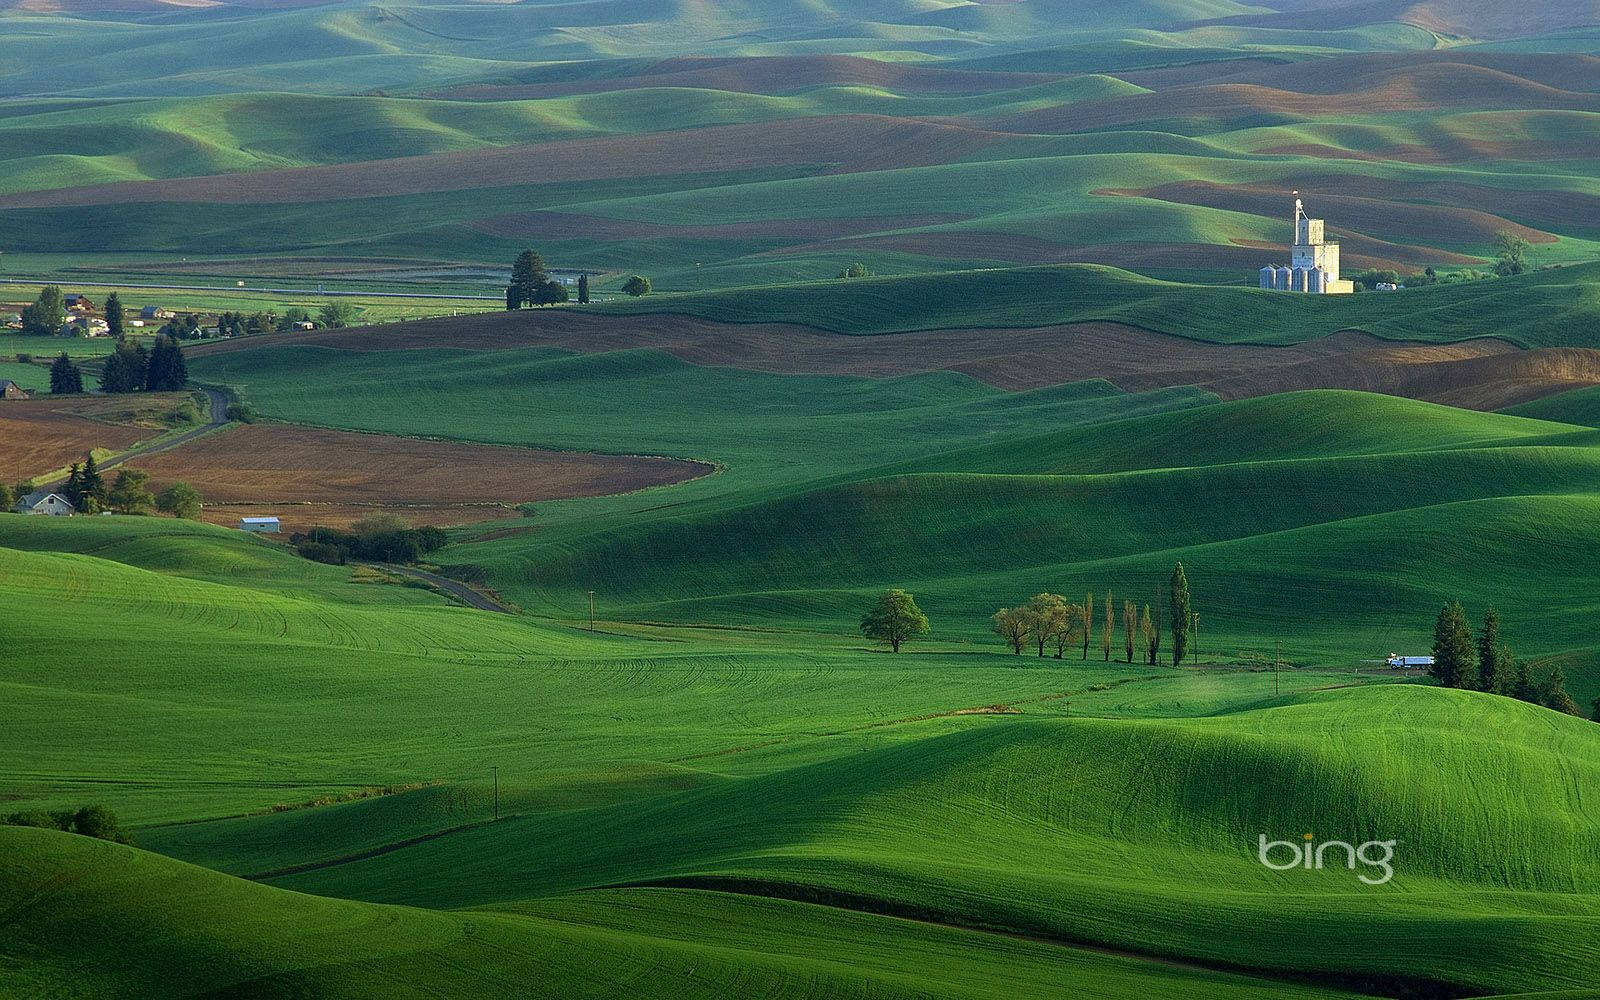 Bing Green Landscape Wallpaper